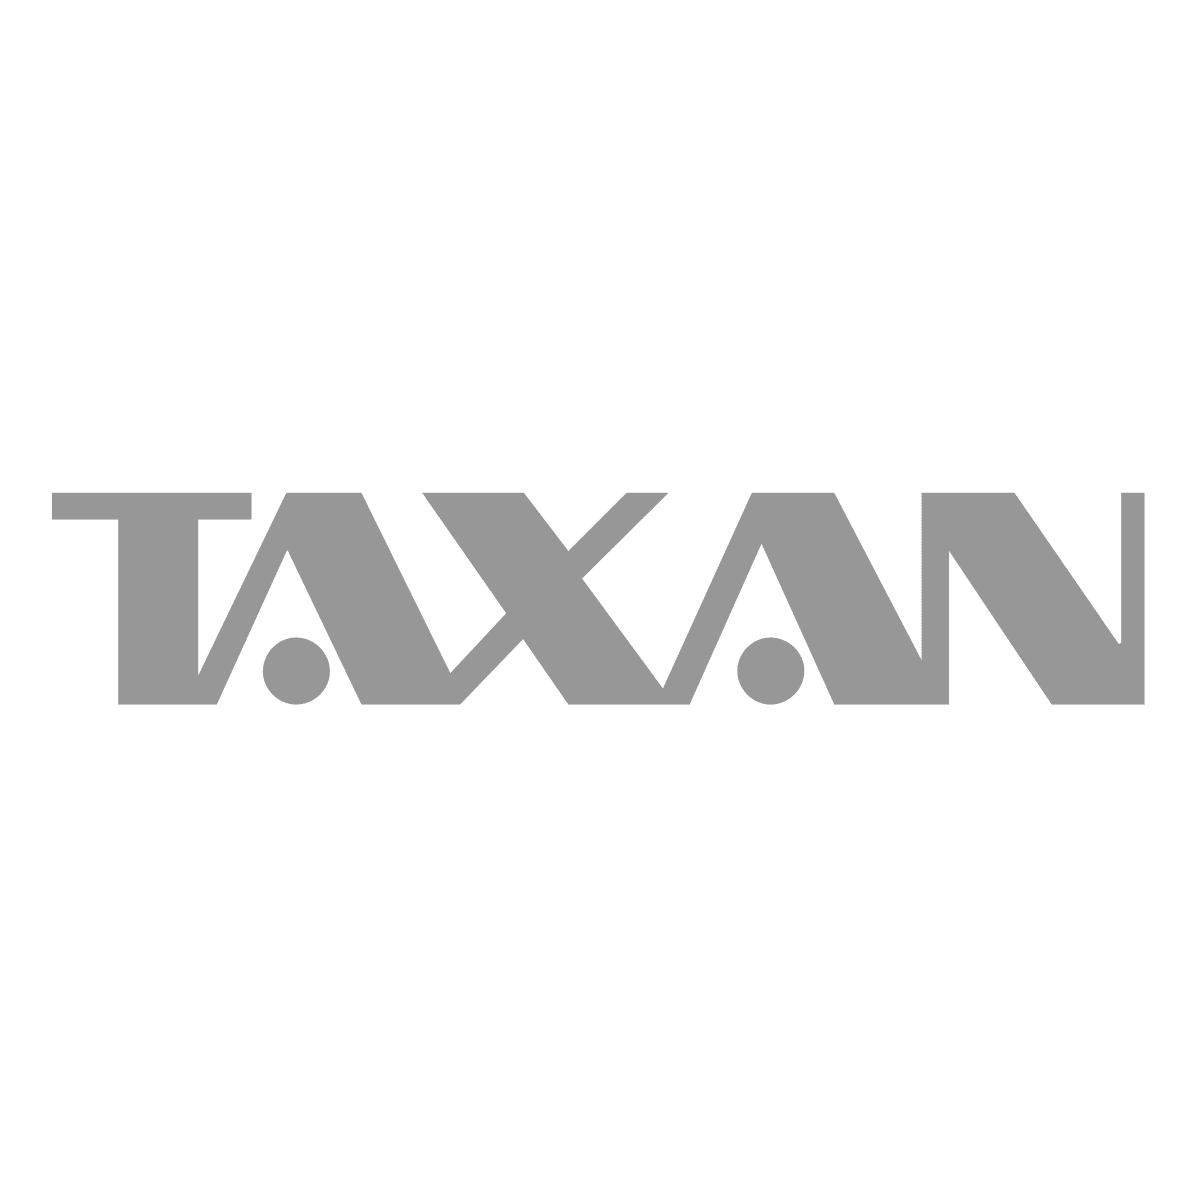 Taxan Stats & Games